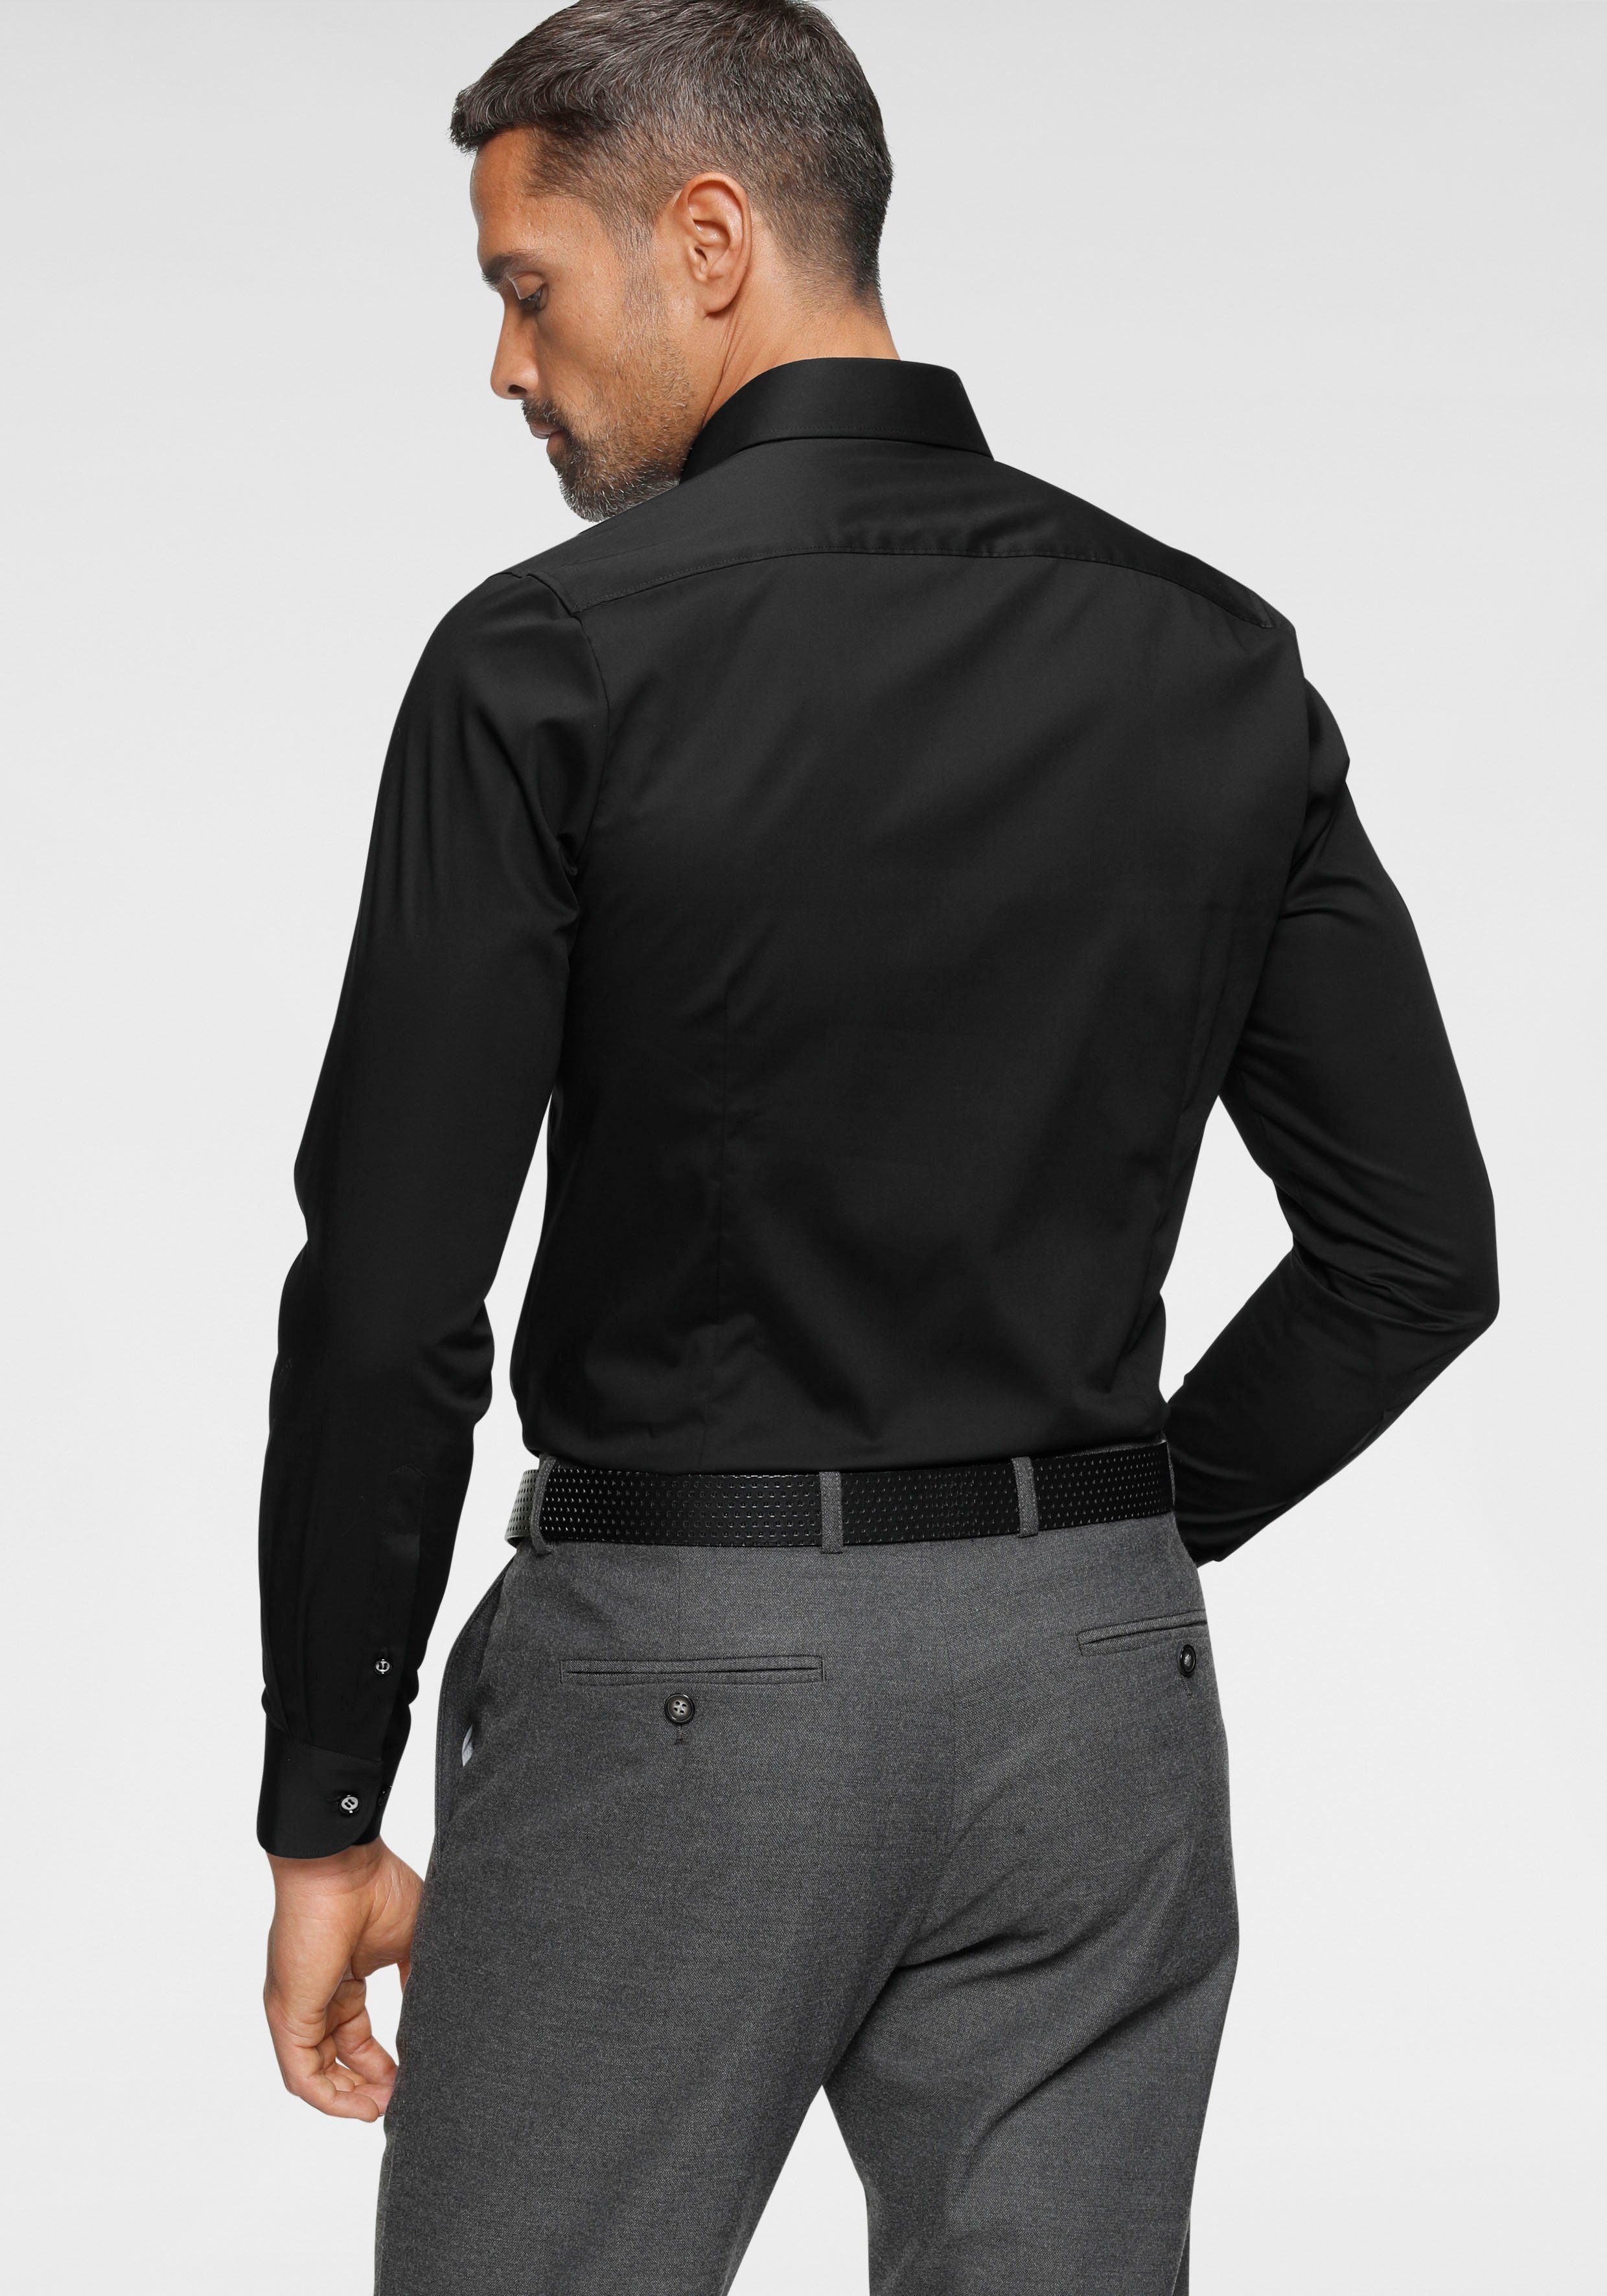 Rücken body schmale im OLYMP Form, mit Five Abnähern tailliert Italienische Level Knopfleiste, Businesshemd fit Slim-fit/